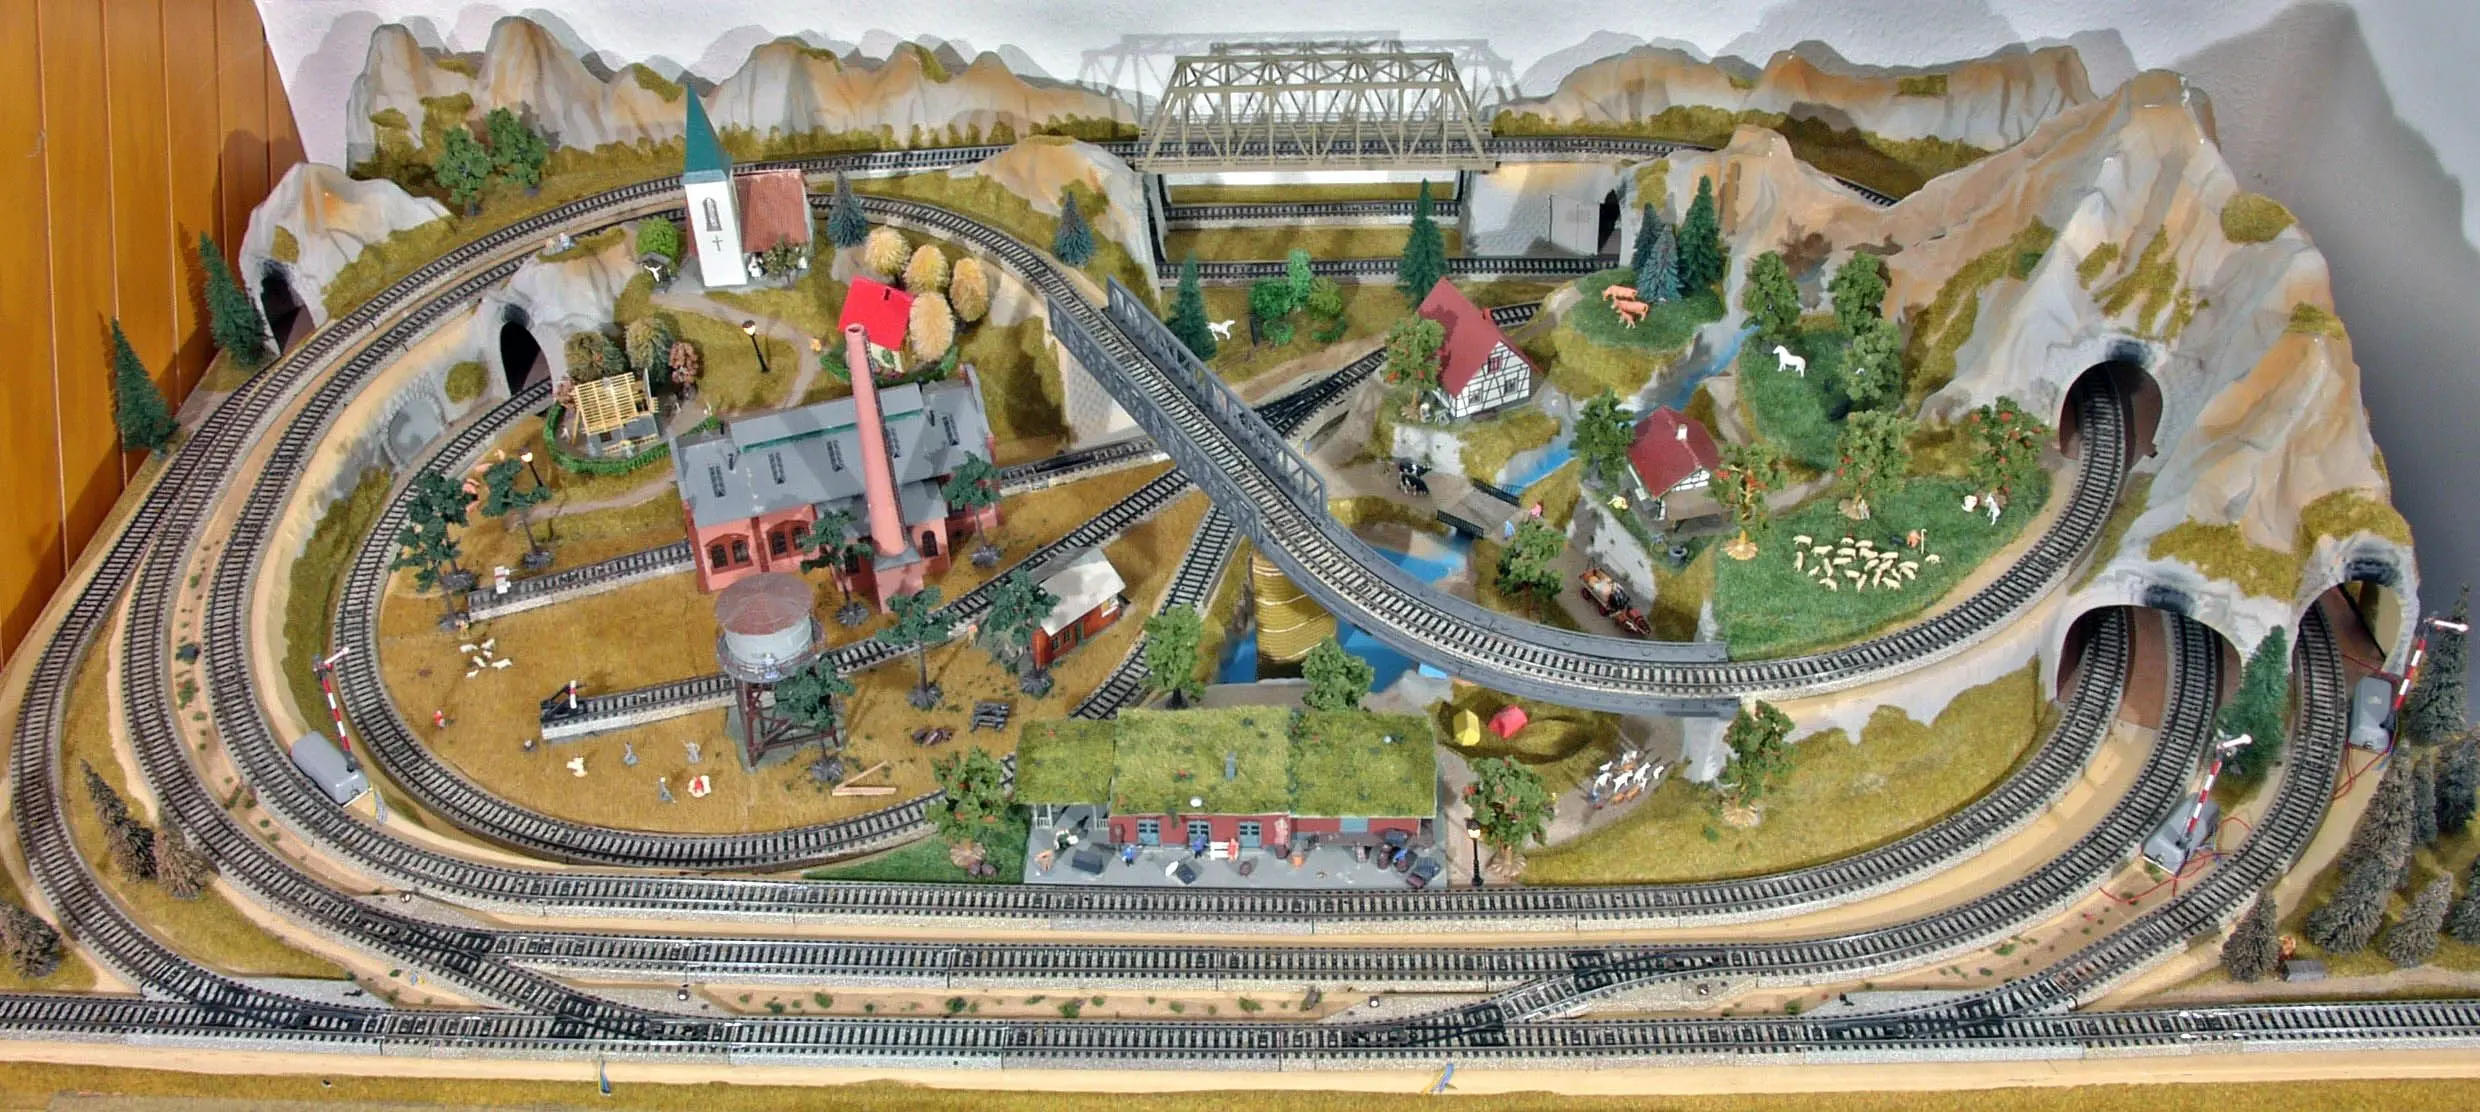 imagenes de proceso de construccion de maquetas de ferrocarriles - Qué significa Acantonar un tren